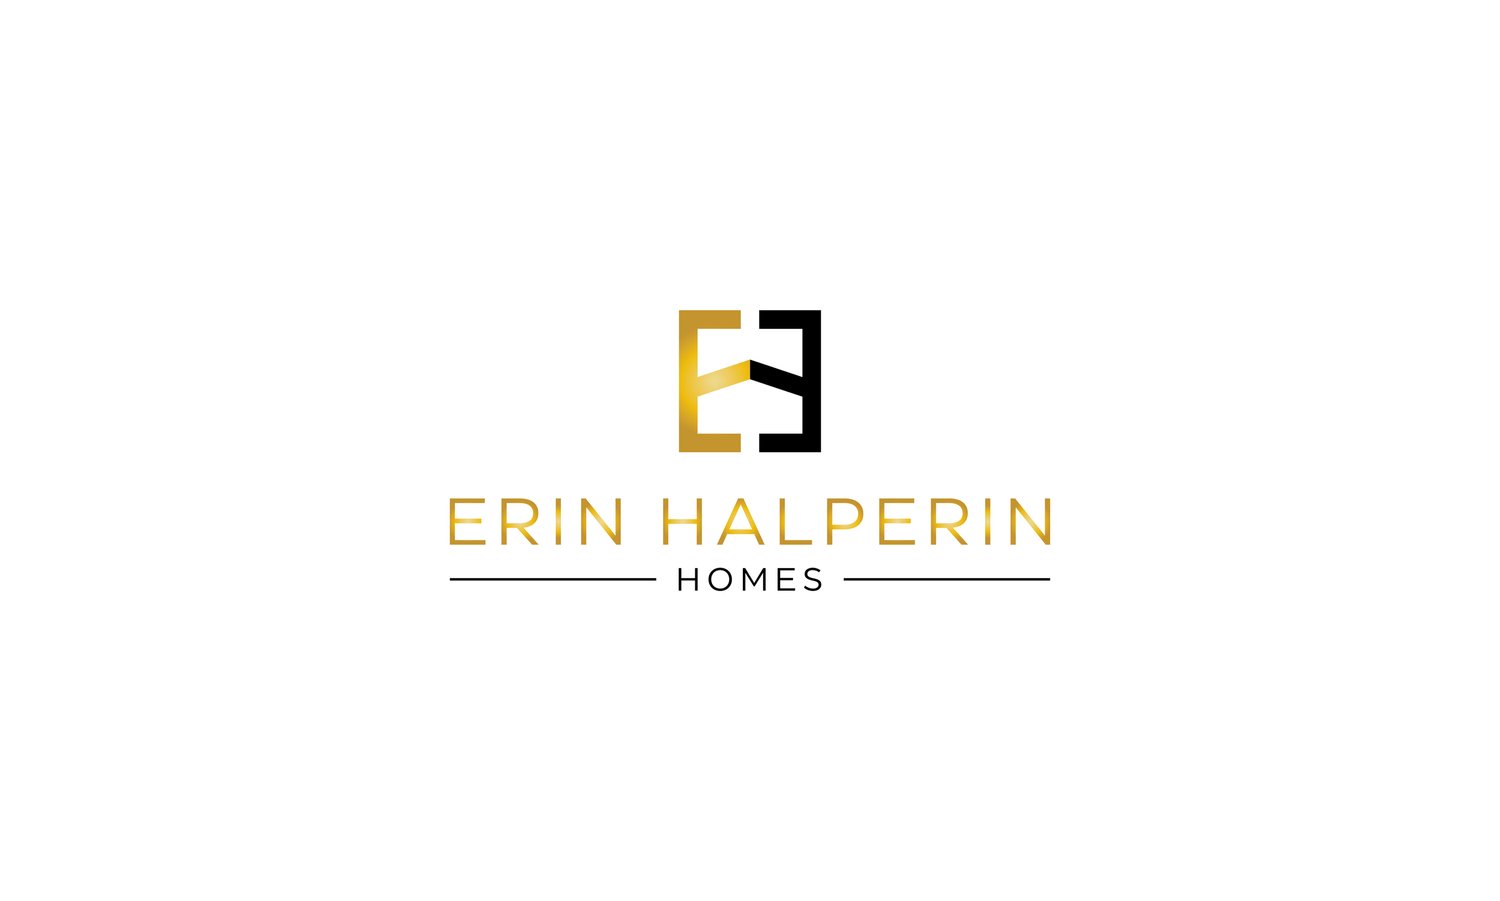 Erin Halperin Homes